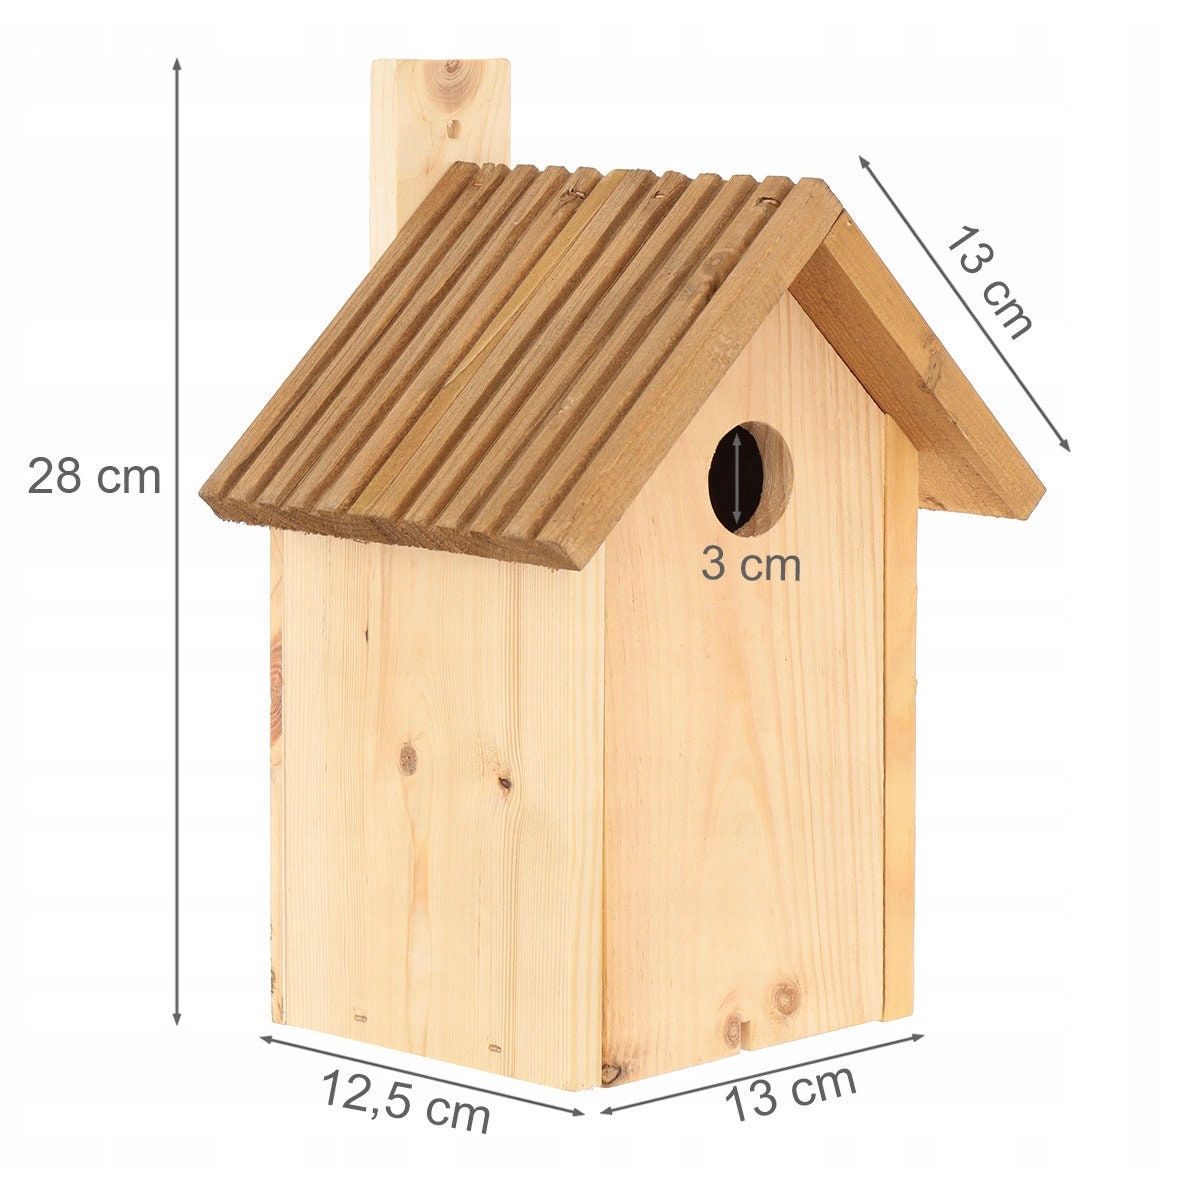 Wooden bird feeder with Personalization | Bird Watching Bird House | Unique Wood bird feeder | bird lover gift